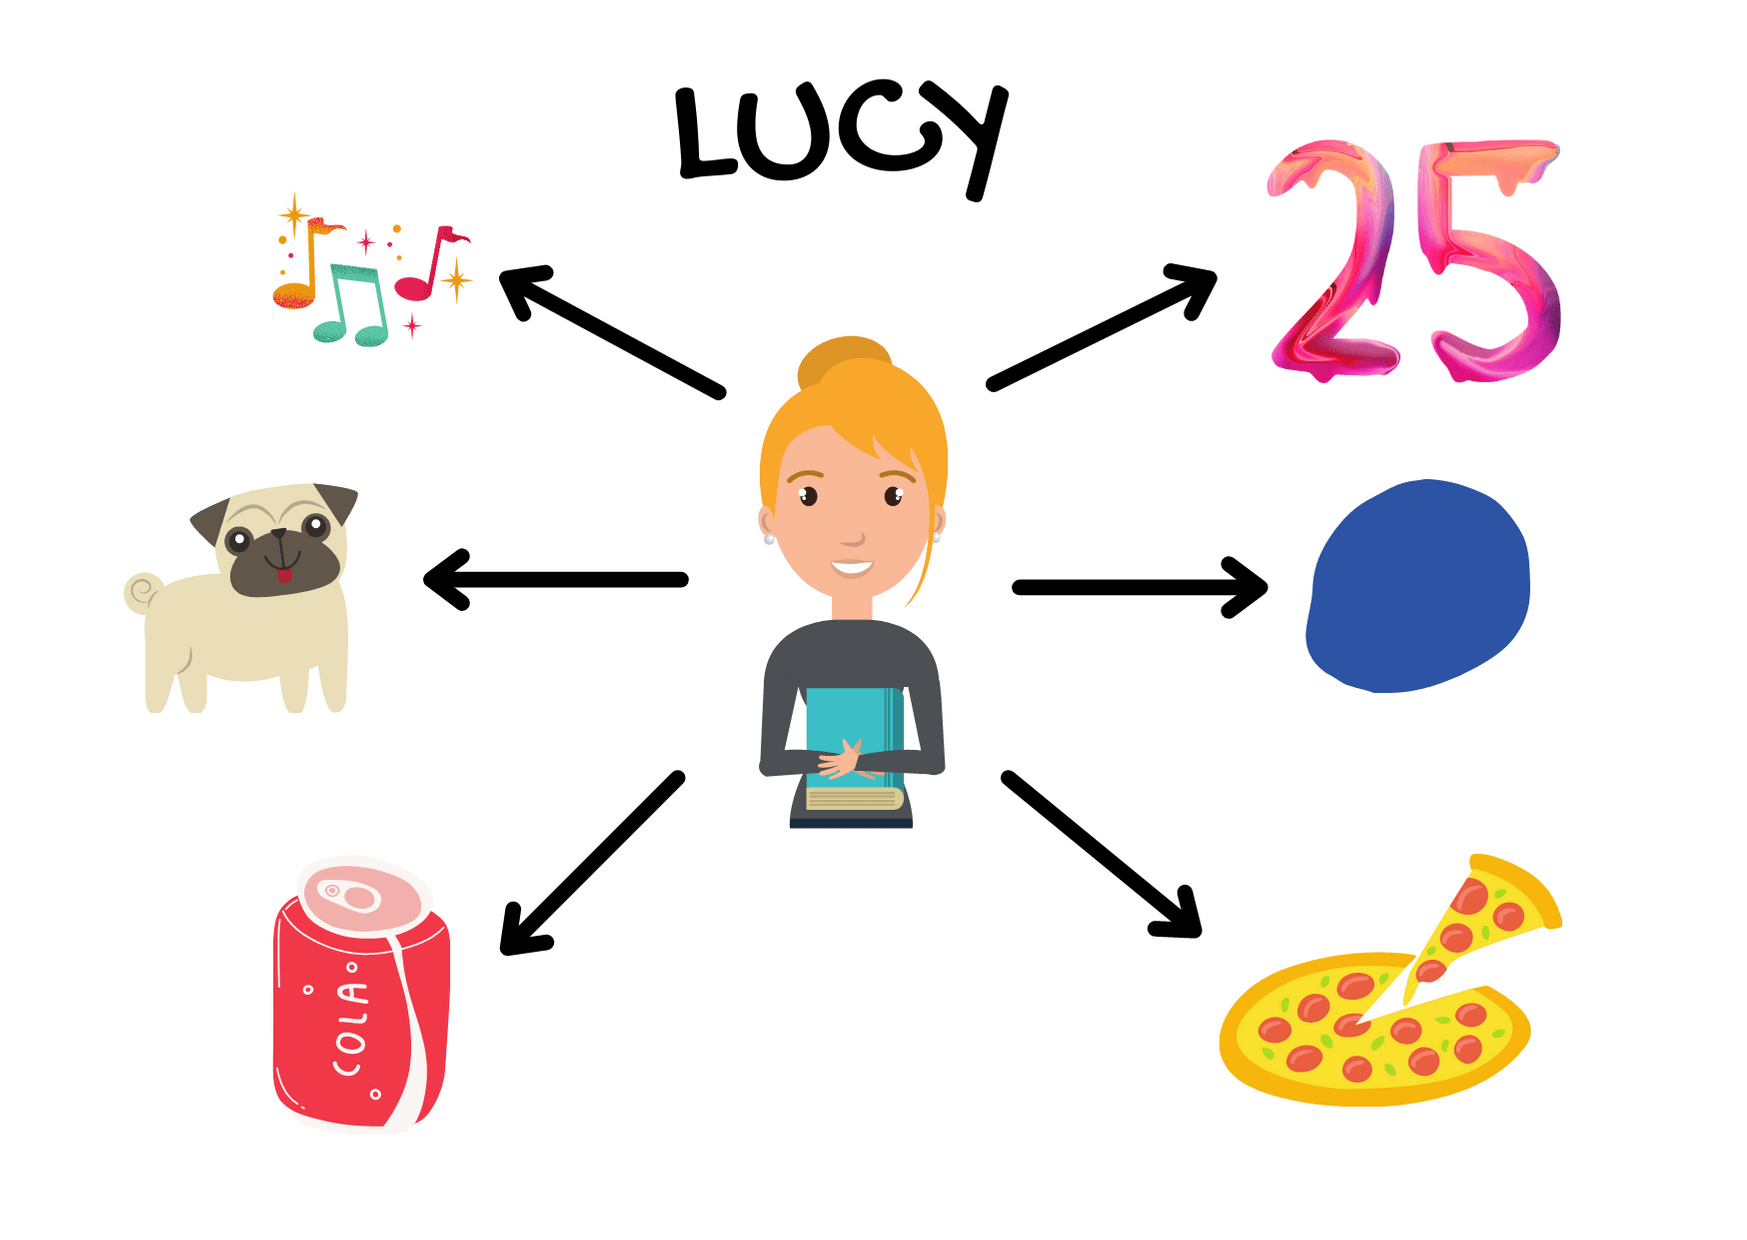 LUCY Skyteach